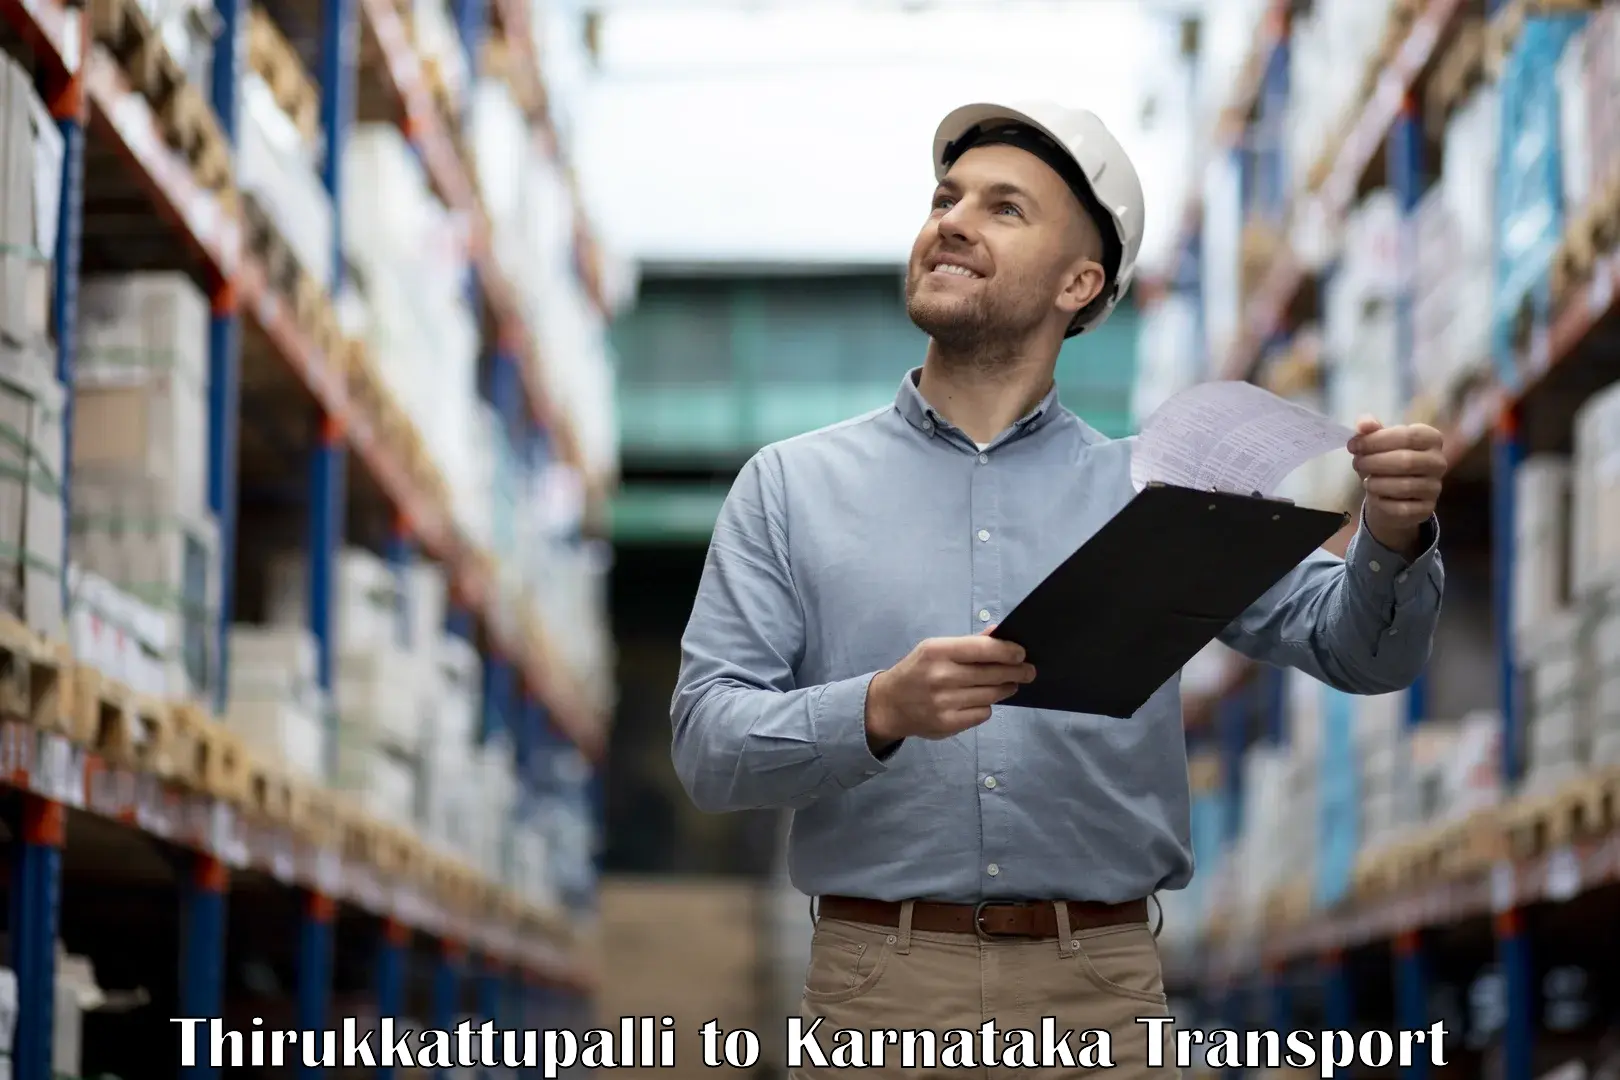 Intercity transport Thirukkattupalli to Hagaribommanahalli